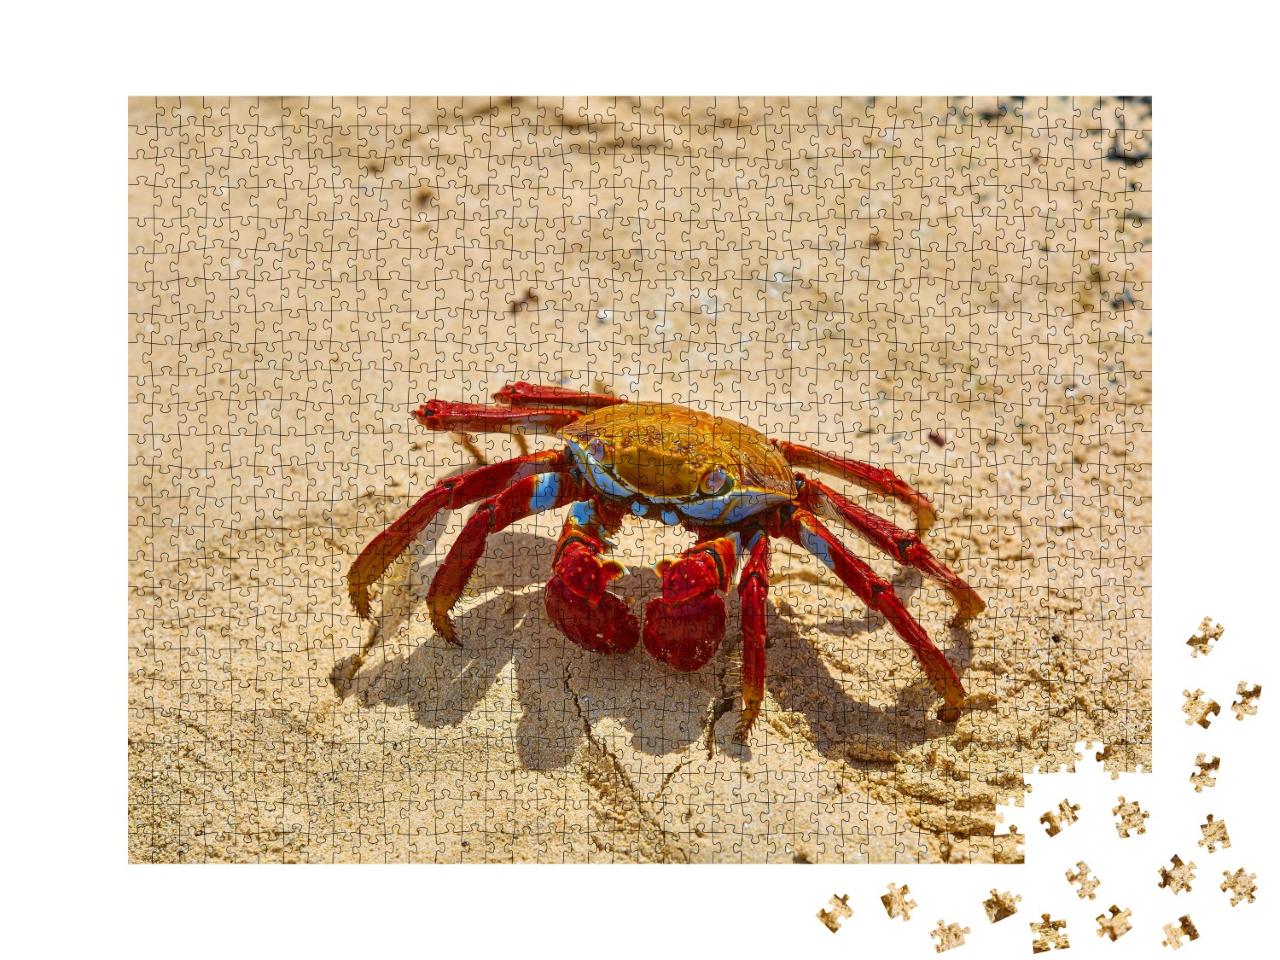 Puzzle de 1000 pièces « Crabe Sally Lightfoot sur sable jaune, Iles Galapagos, Équateur »